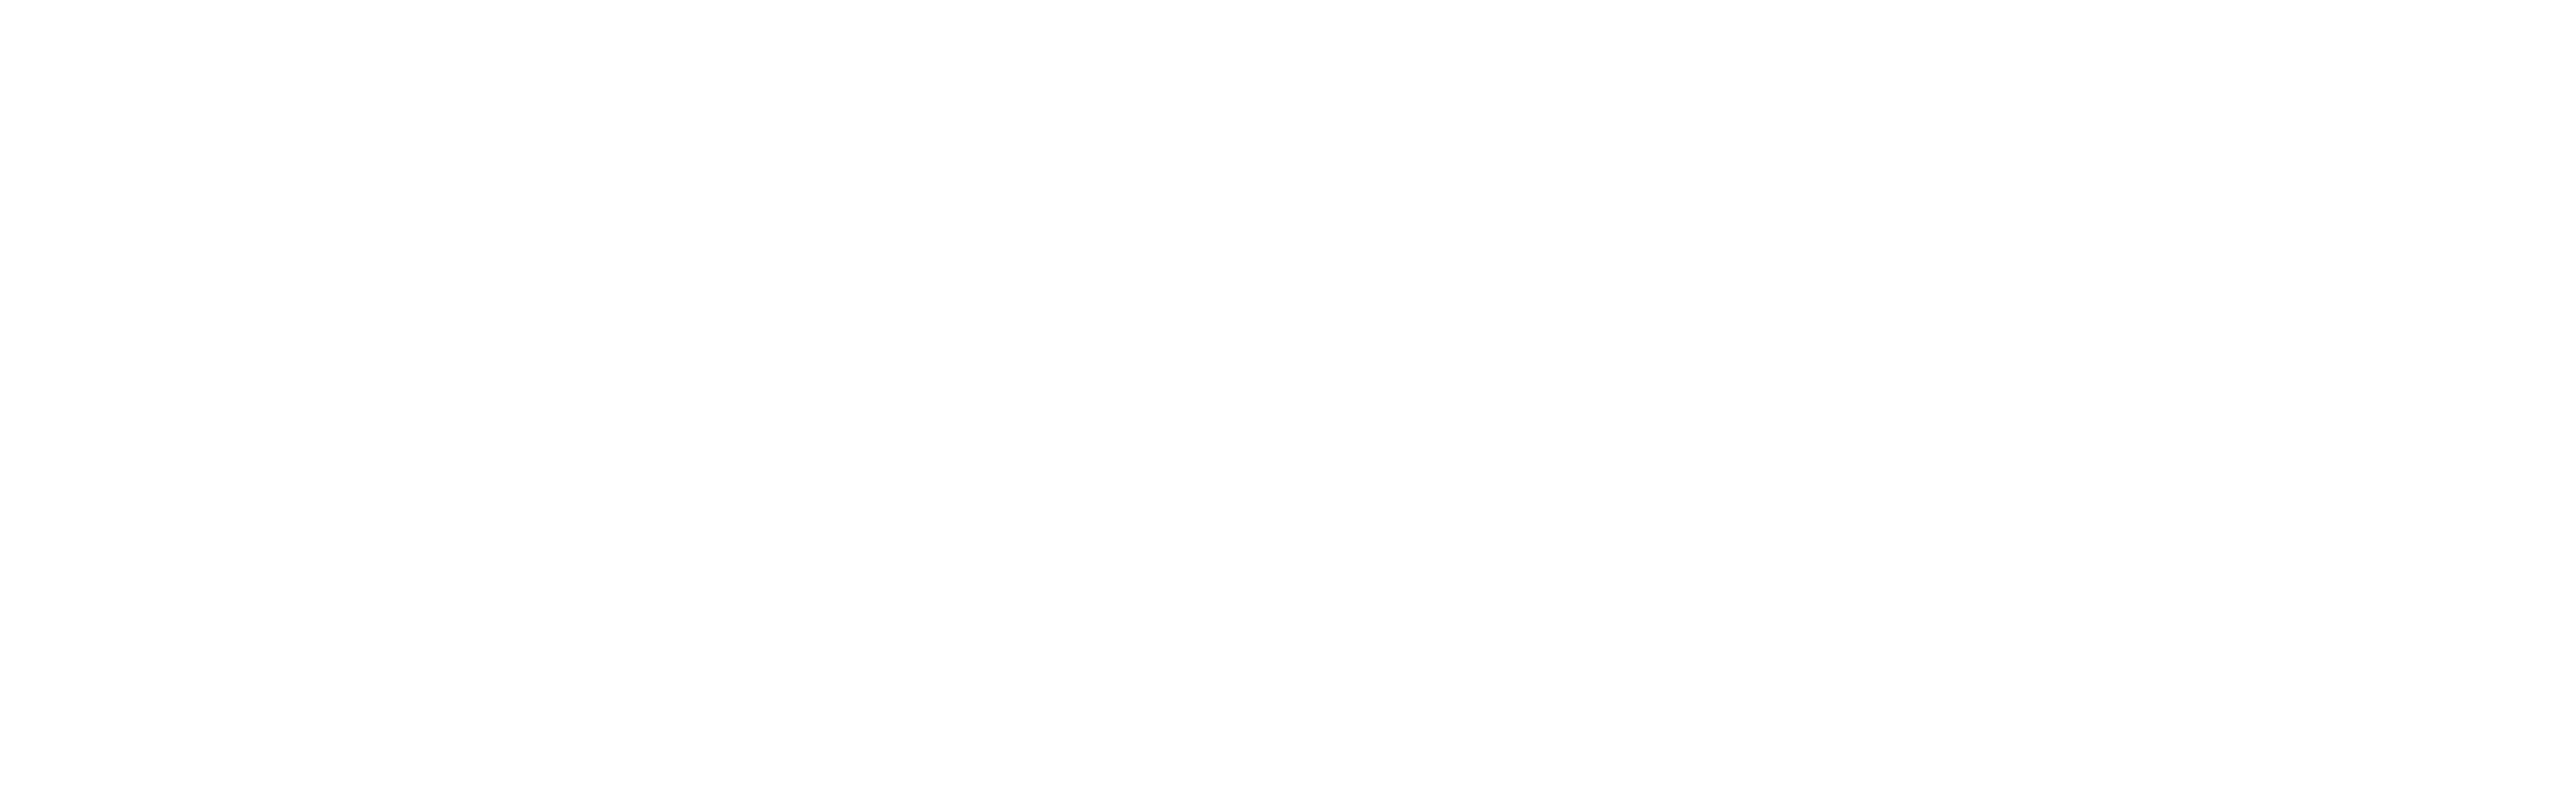 Logo von RTI in Weiss